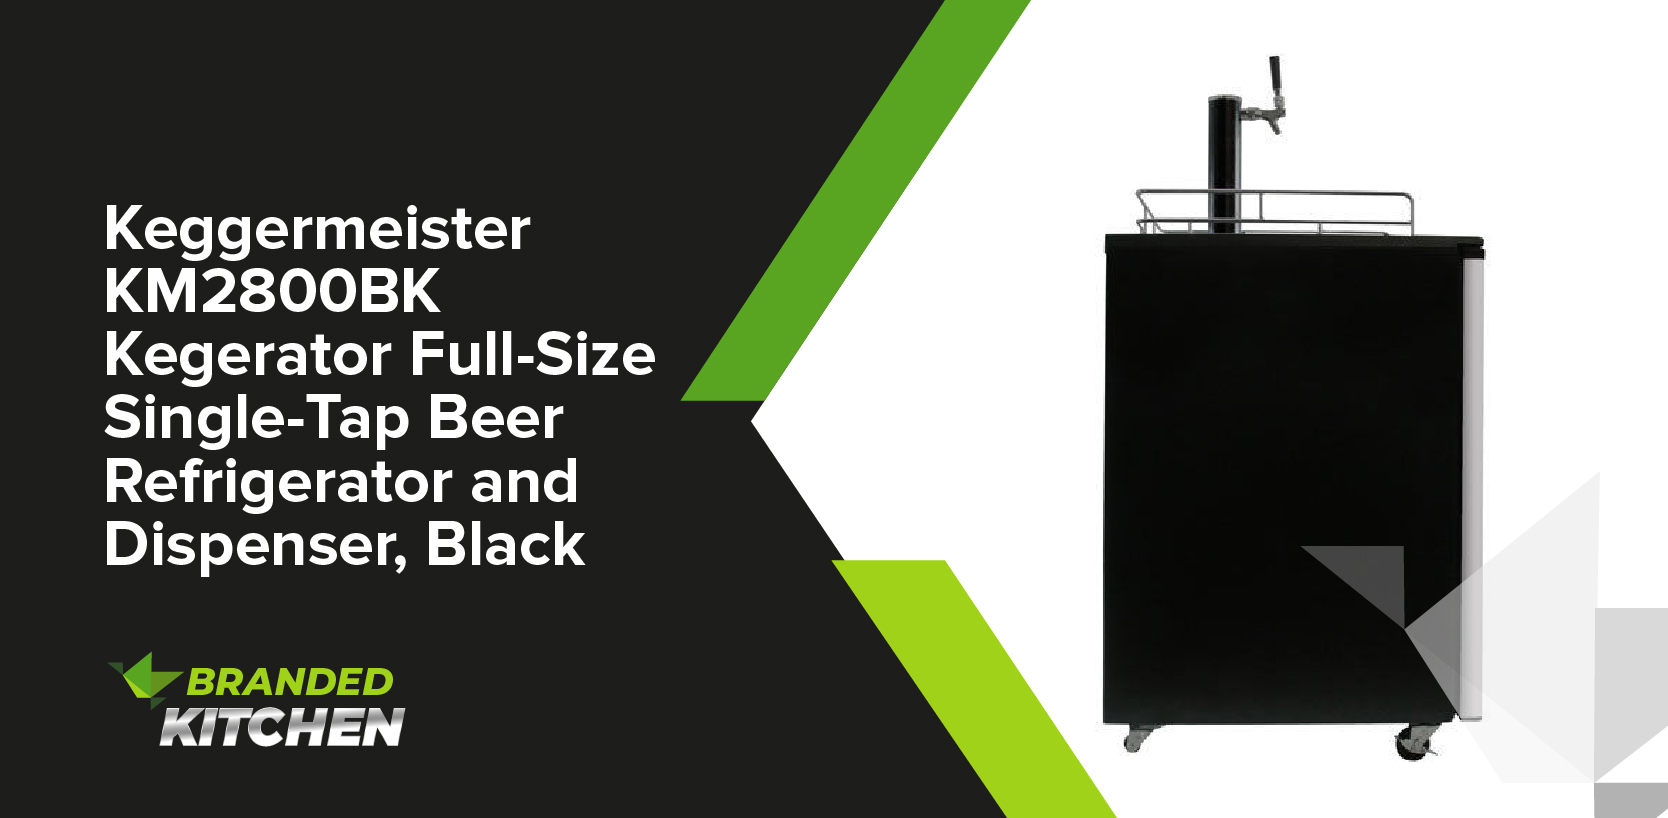 Keggermeister KM2800BK Kegerator Full-Size Single-Tap Beer Refrigerator and Dispenser, Black